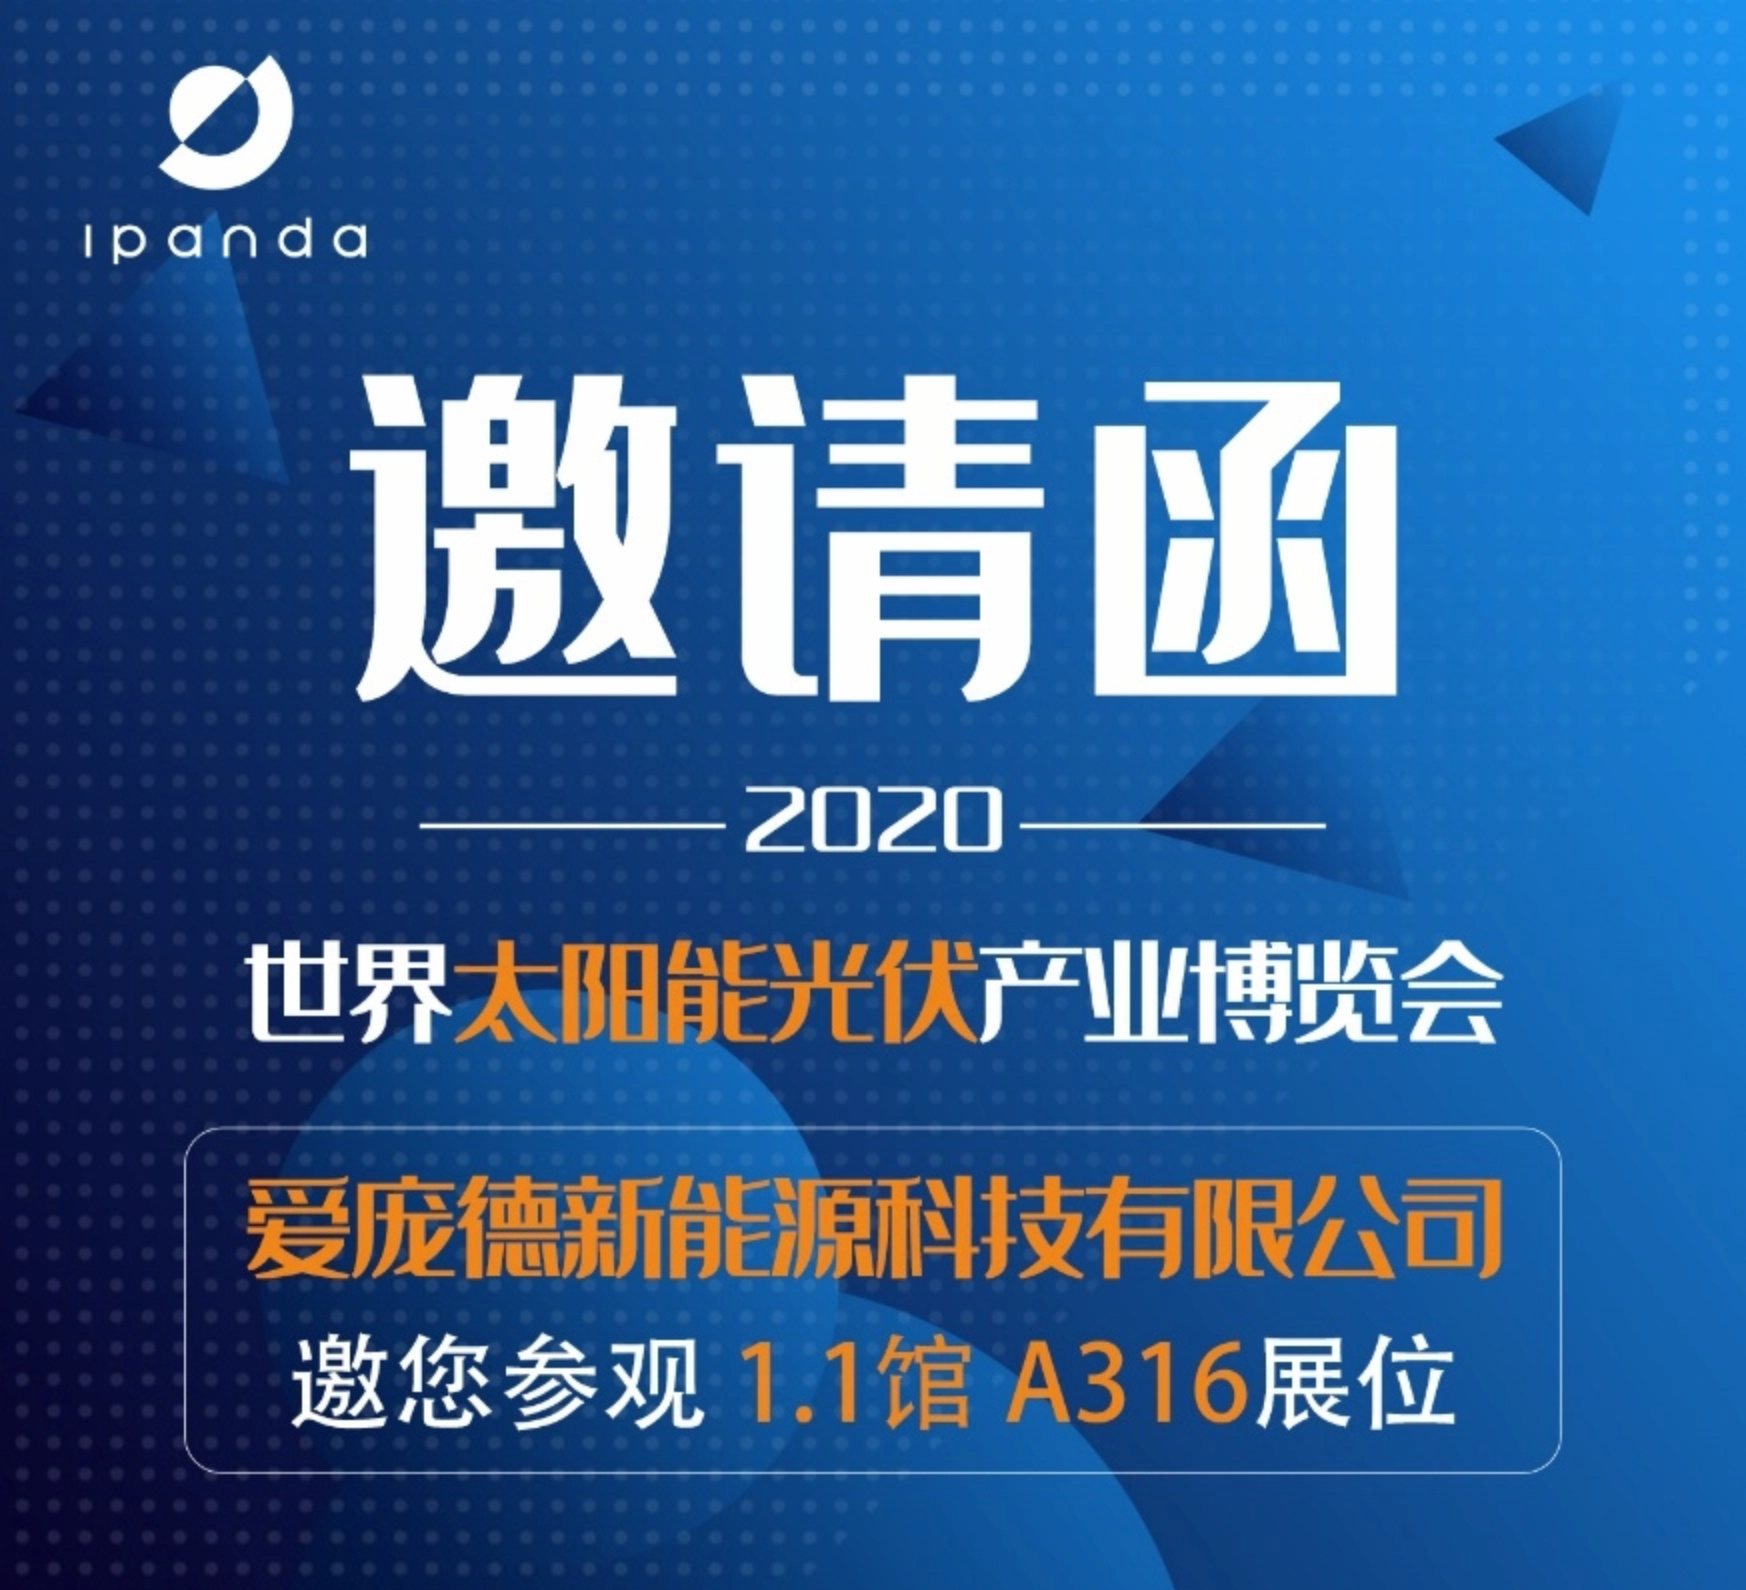 Ipandee e você se encontrarão em 2020 Guangzhou International Solar PV Exhibition